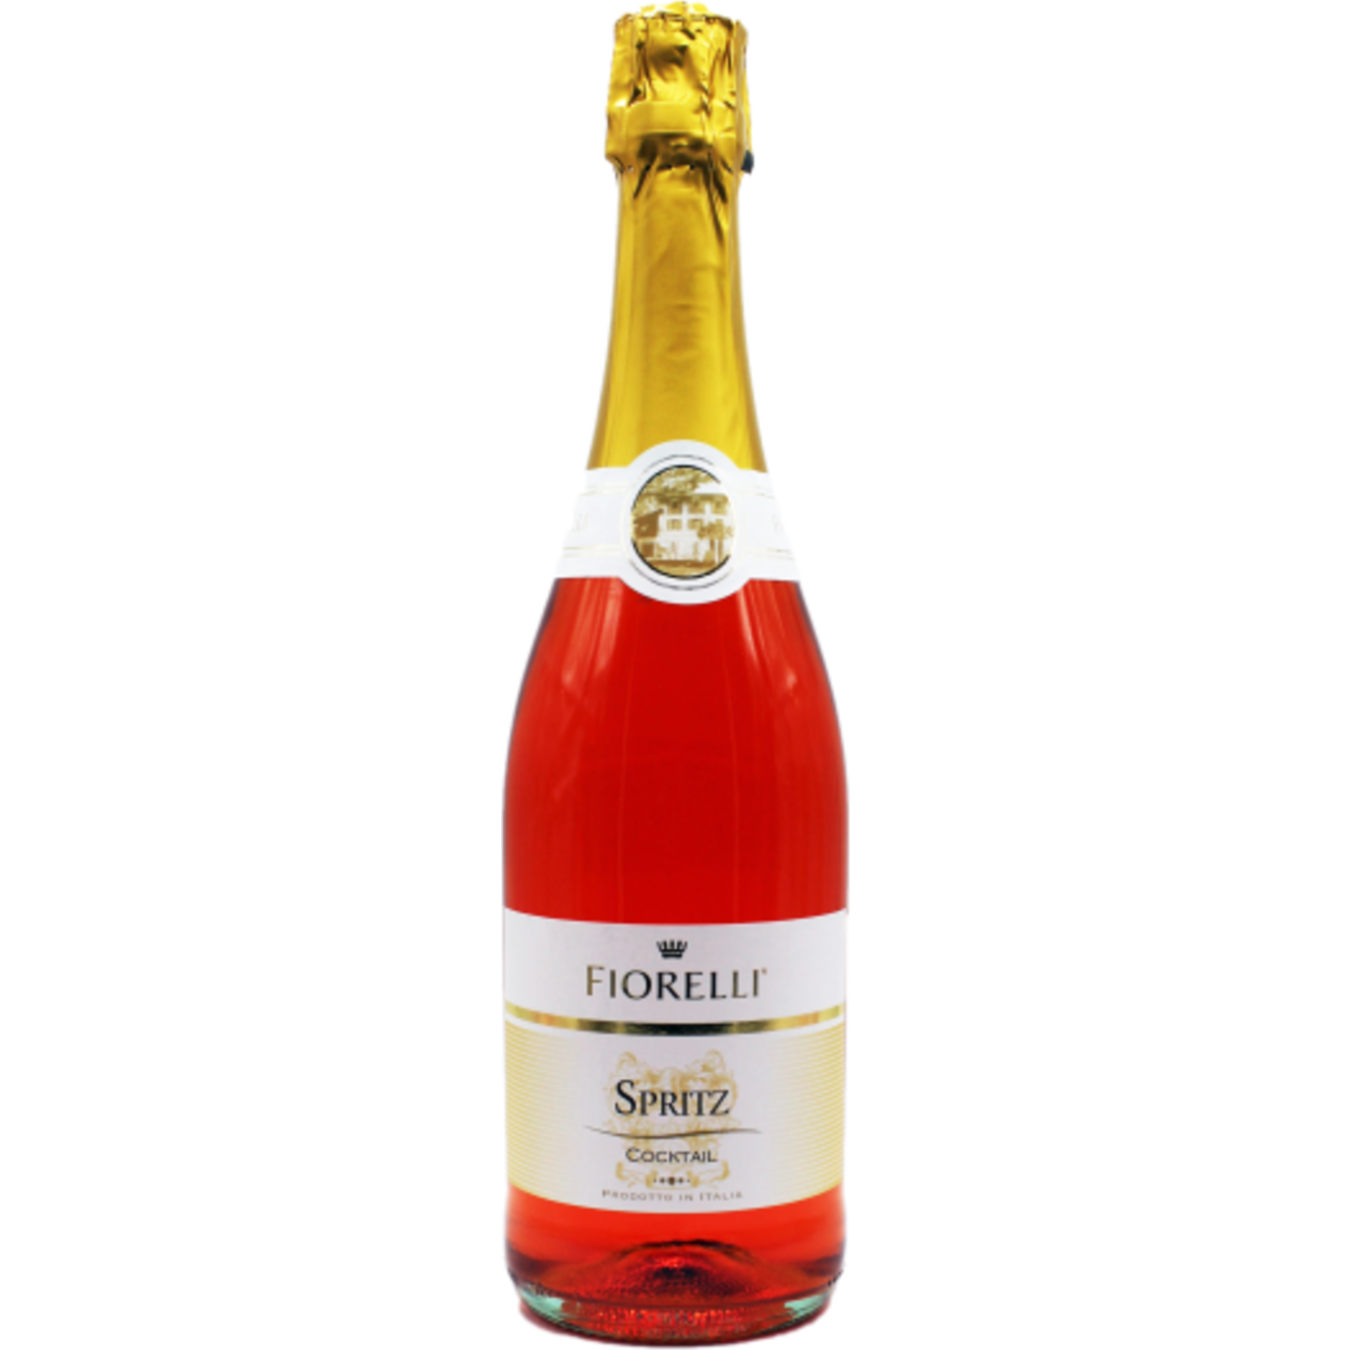 Carbonated wine drink Fiorelli Spritz 7% 0.75 l